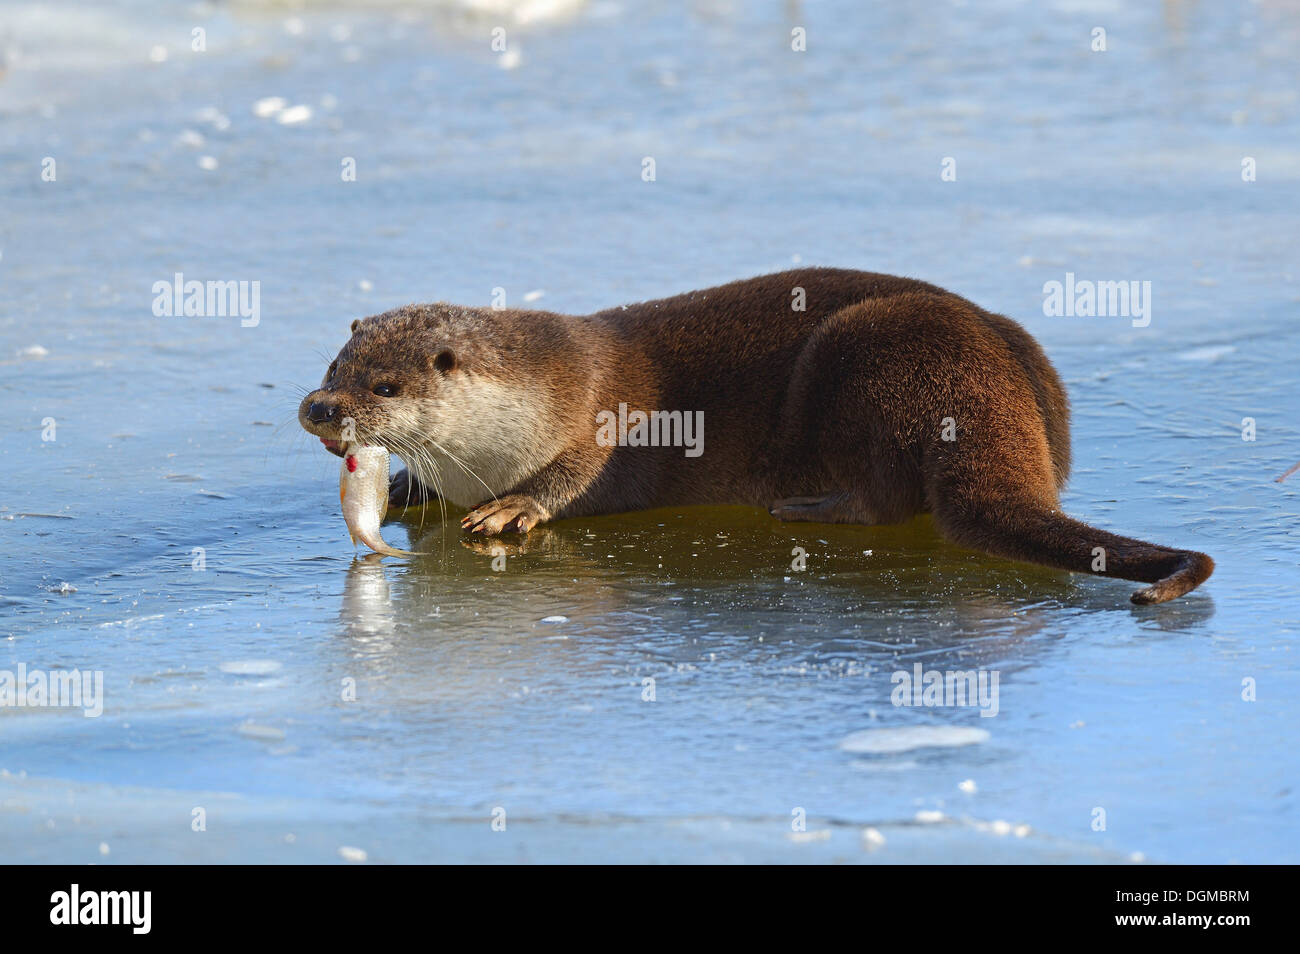 Loutre d'Europe (Lutra lutra) se nourrir de poissons capturés dans un étang gelé en hiver, Brandebourg, Brandebourg, Allemagne Banque D'Images